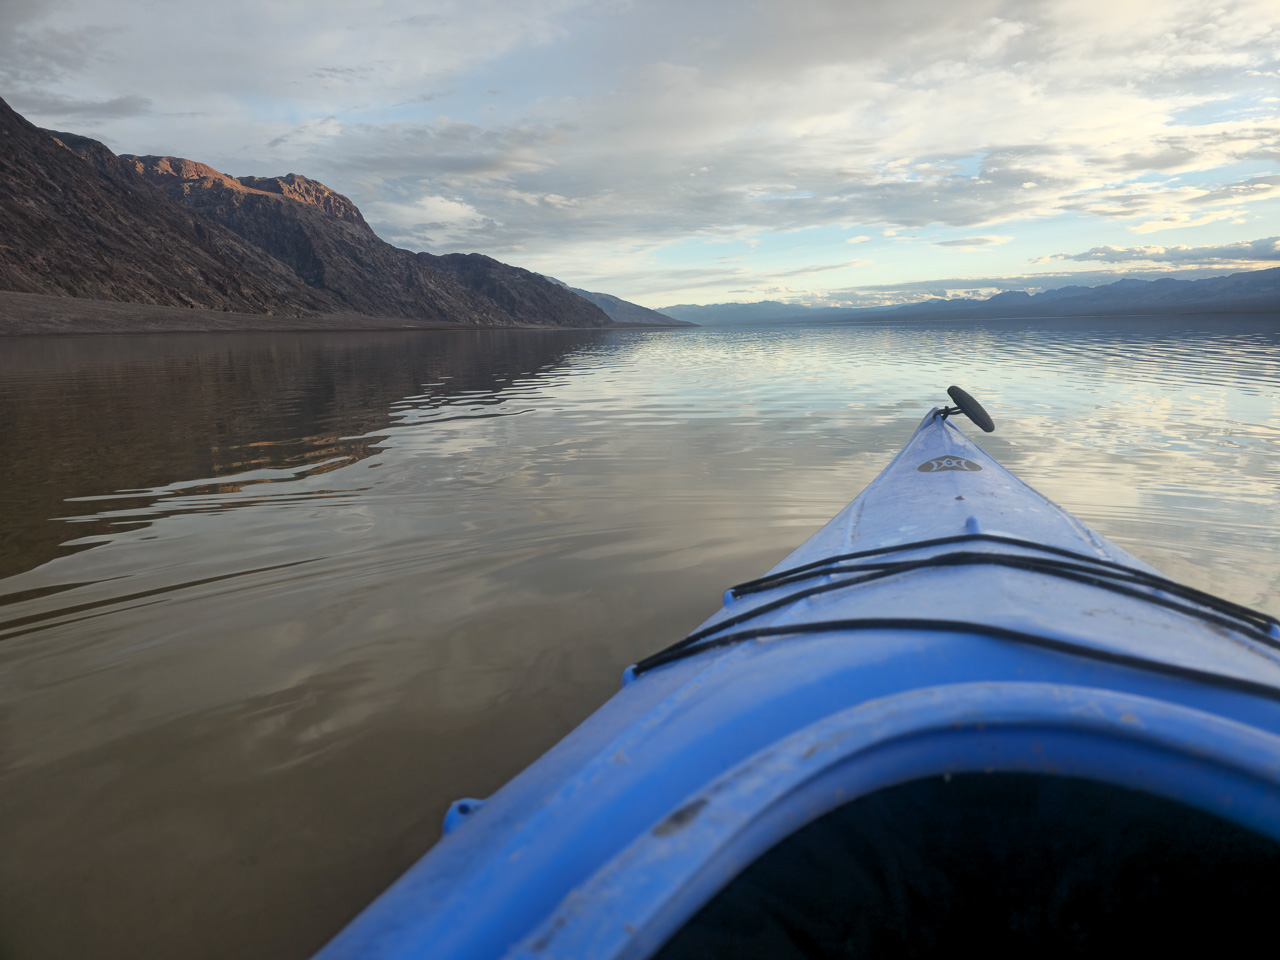 Kayaking on Lake Manly in Death Valley National Park - Image credit NPS Michael Kohler